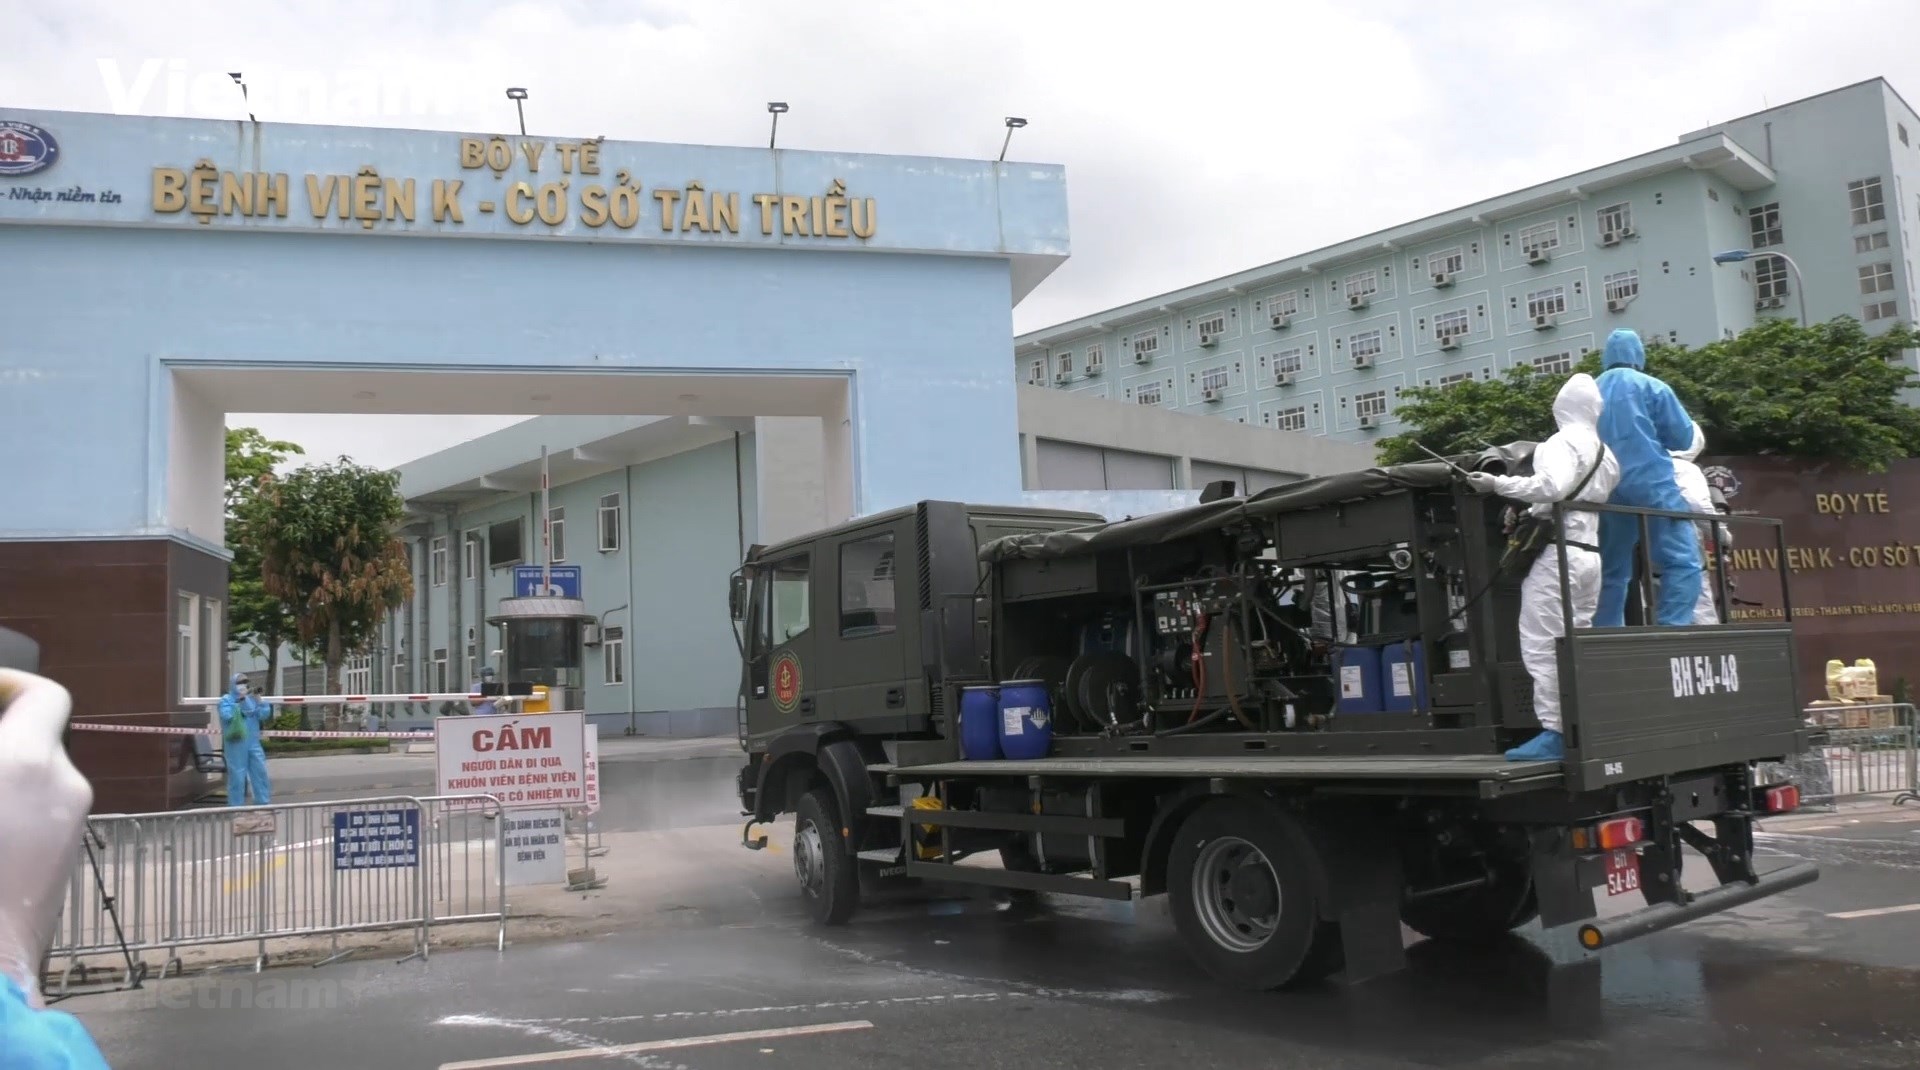 Thủ tướng yêu cầu Bộ Y tế xem xét trách nhiệm của hai bệnh viện tại Hà Nội trong phòng dịch Covid-19 - Ảnh 1.